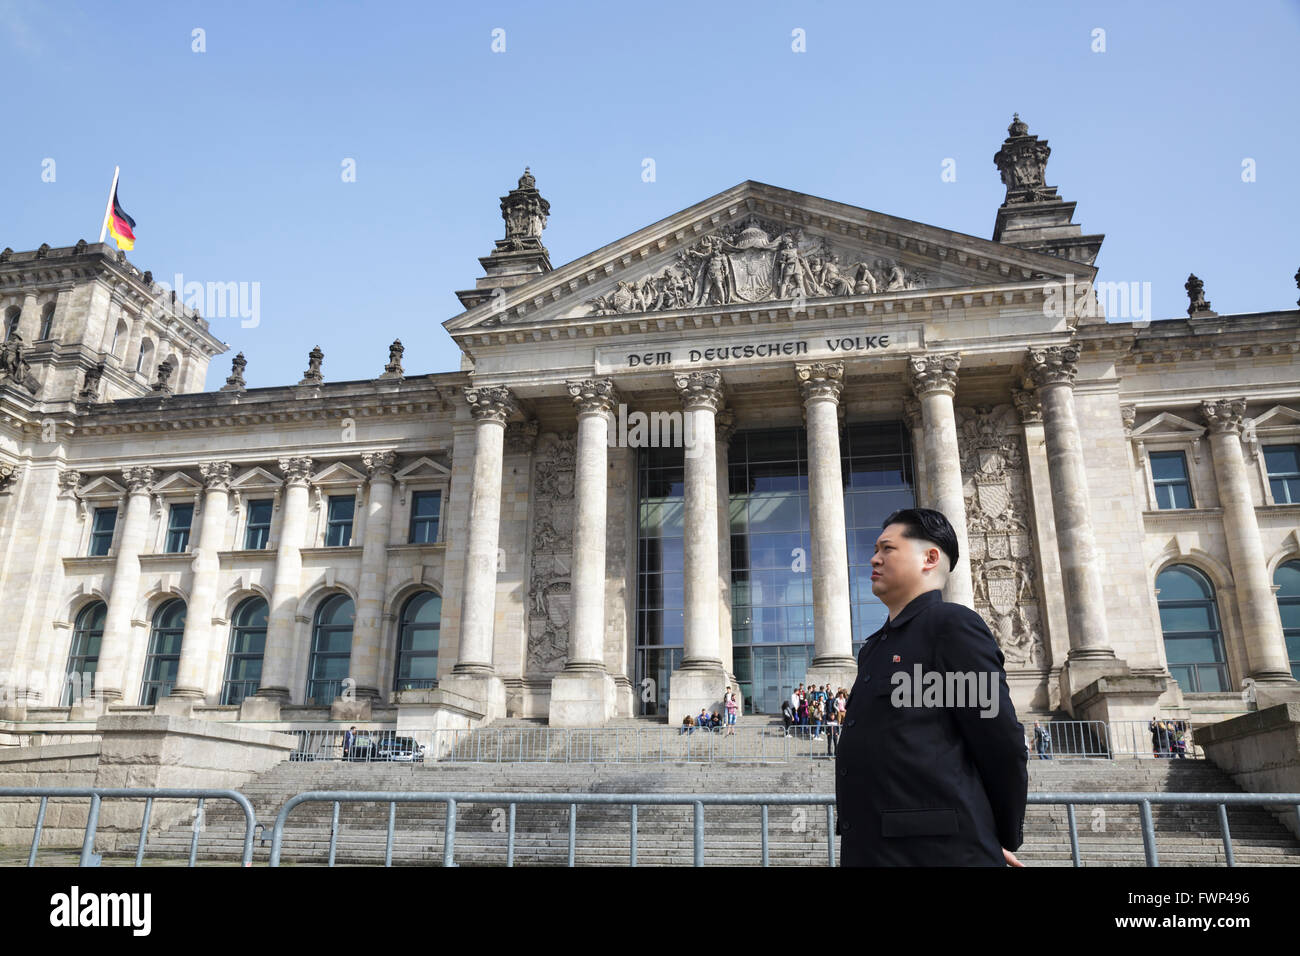 Berlín, Alemania. 6 de abril de 2016. Kim Jong un imitador, Howard X desde Hong Kong, visitó Berlín, recorriendo los principales sitios turísticos para sorpresa de turistas y lugareños. Howard estaba de visita en Alemania para filmar un anuncio para el popular show de televisión alemán 'Schlag den Star' con el comediante Elton. Aquí en el Reichstag Bundestag / Foto de stock